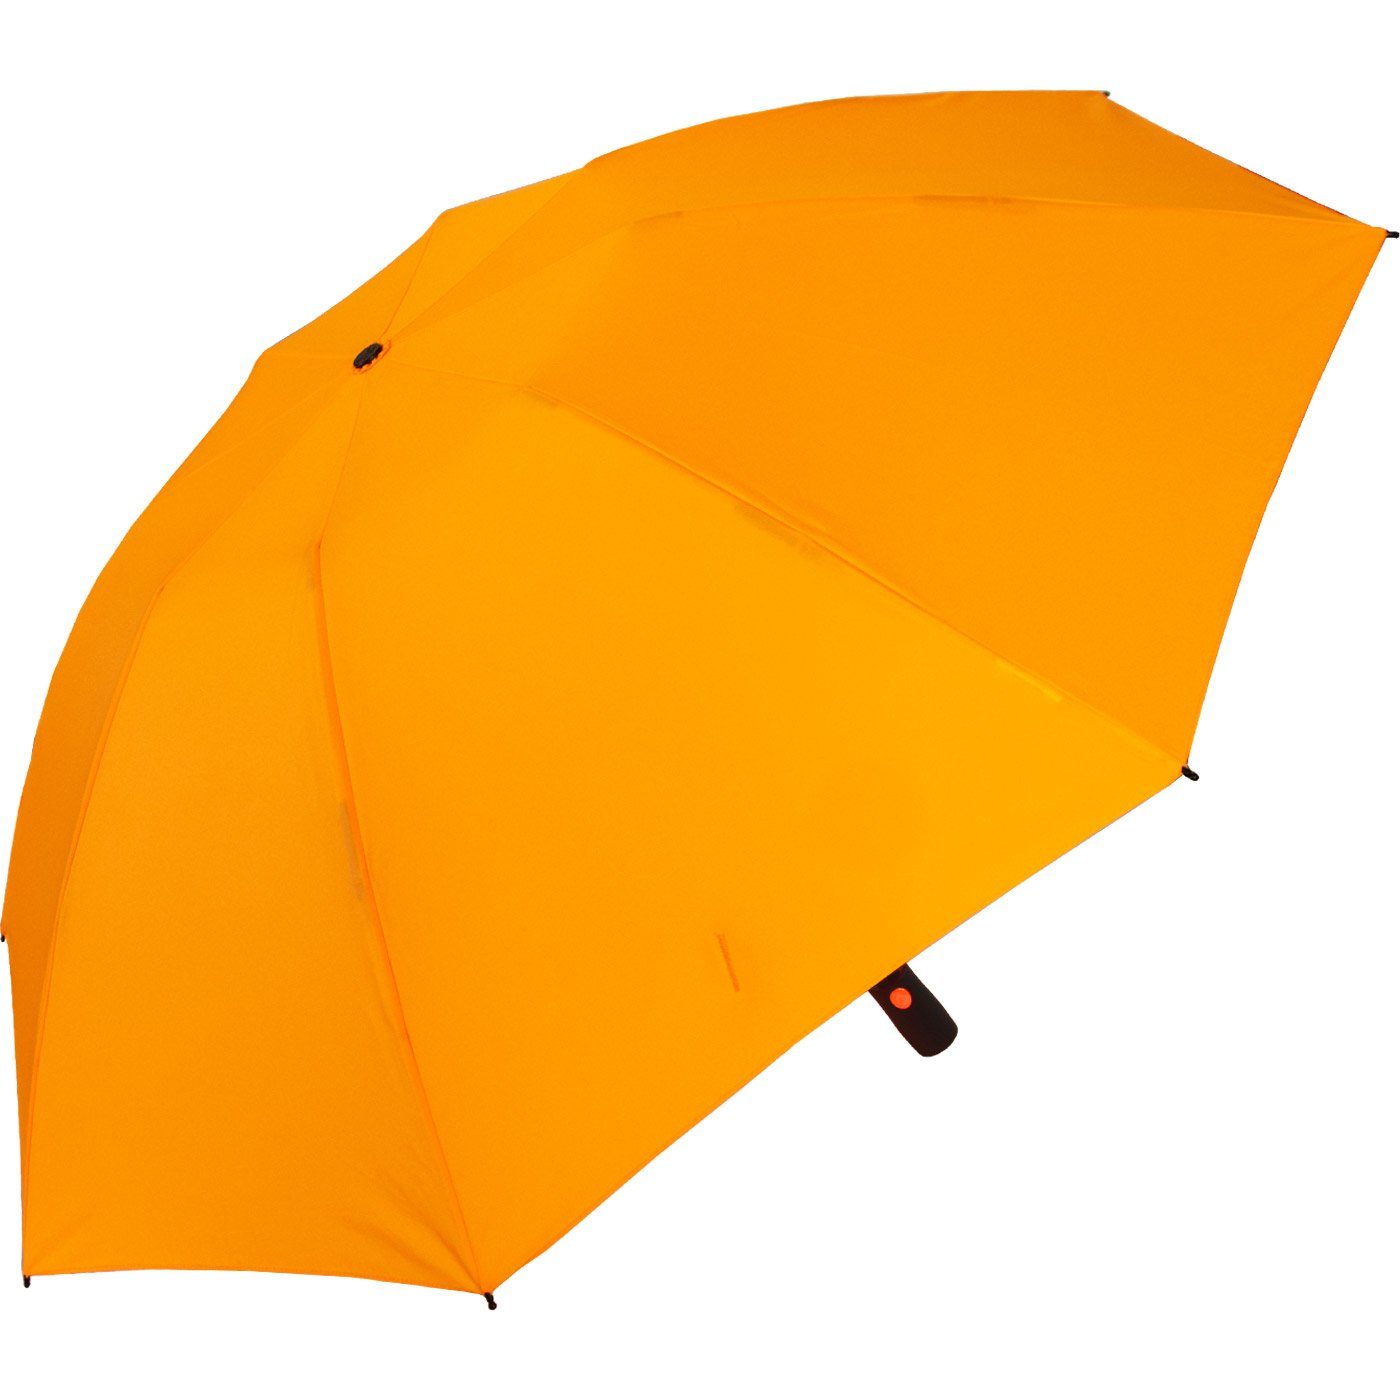 stabilen Speichen Taschenregenschirm iX-brella mit neon-orange bunten öffnender Fiberglas-Automatiksch, umgekehrt Reverse